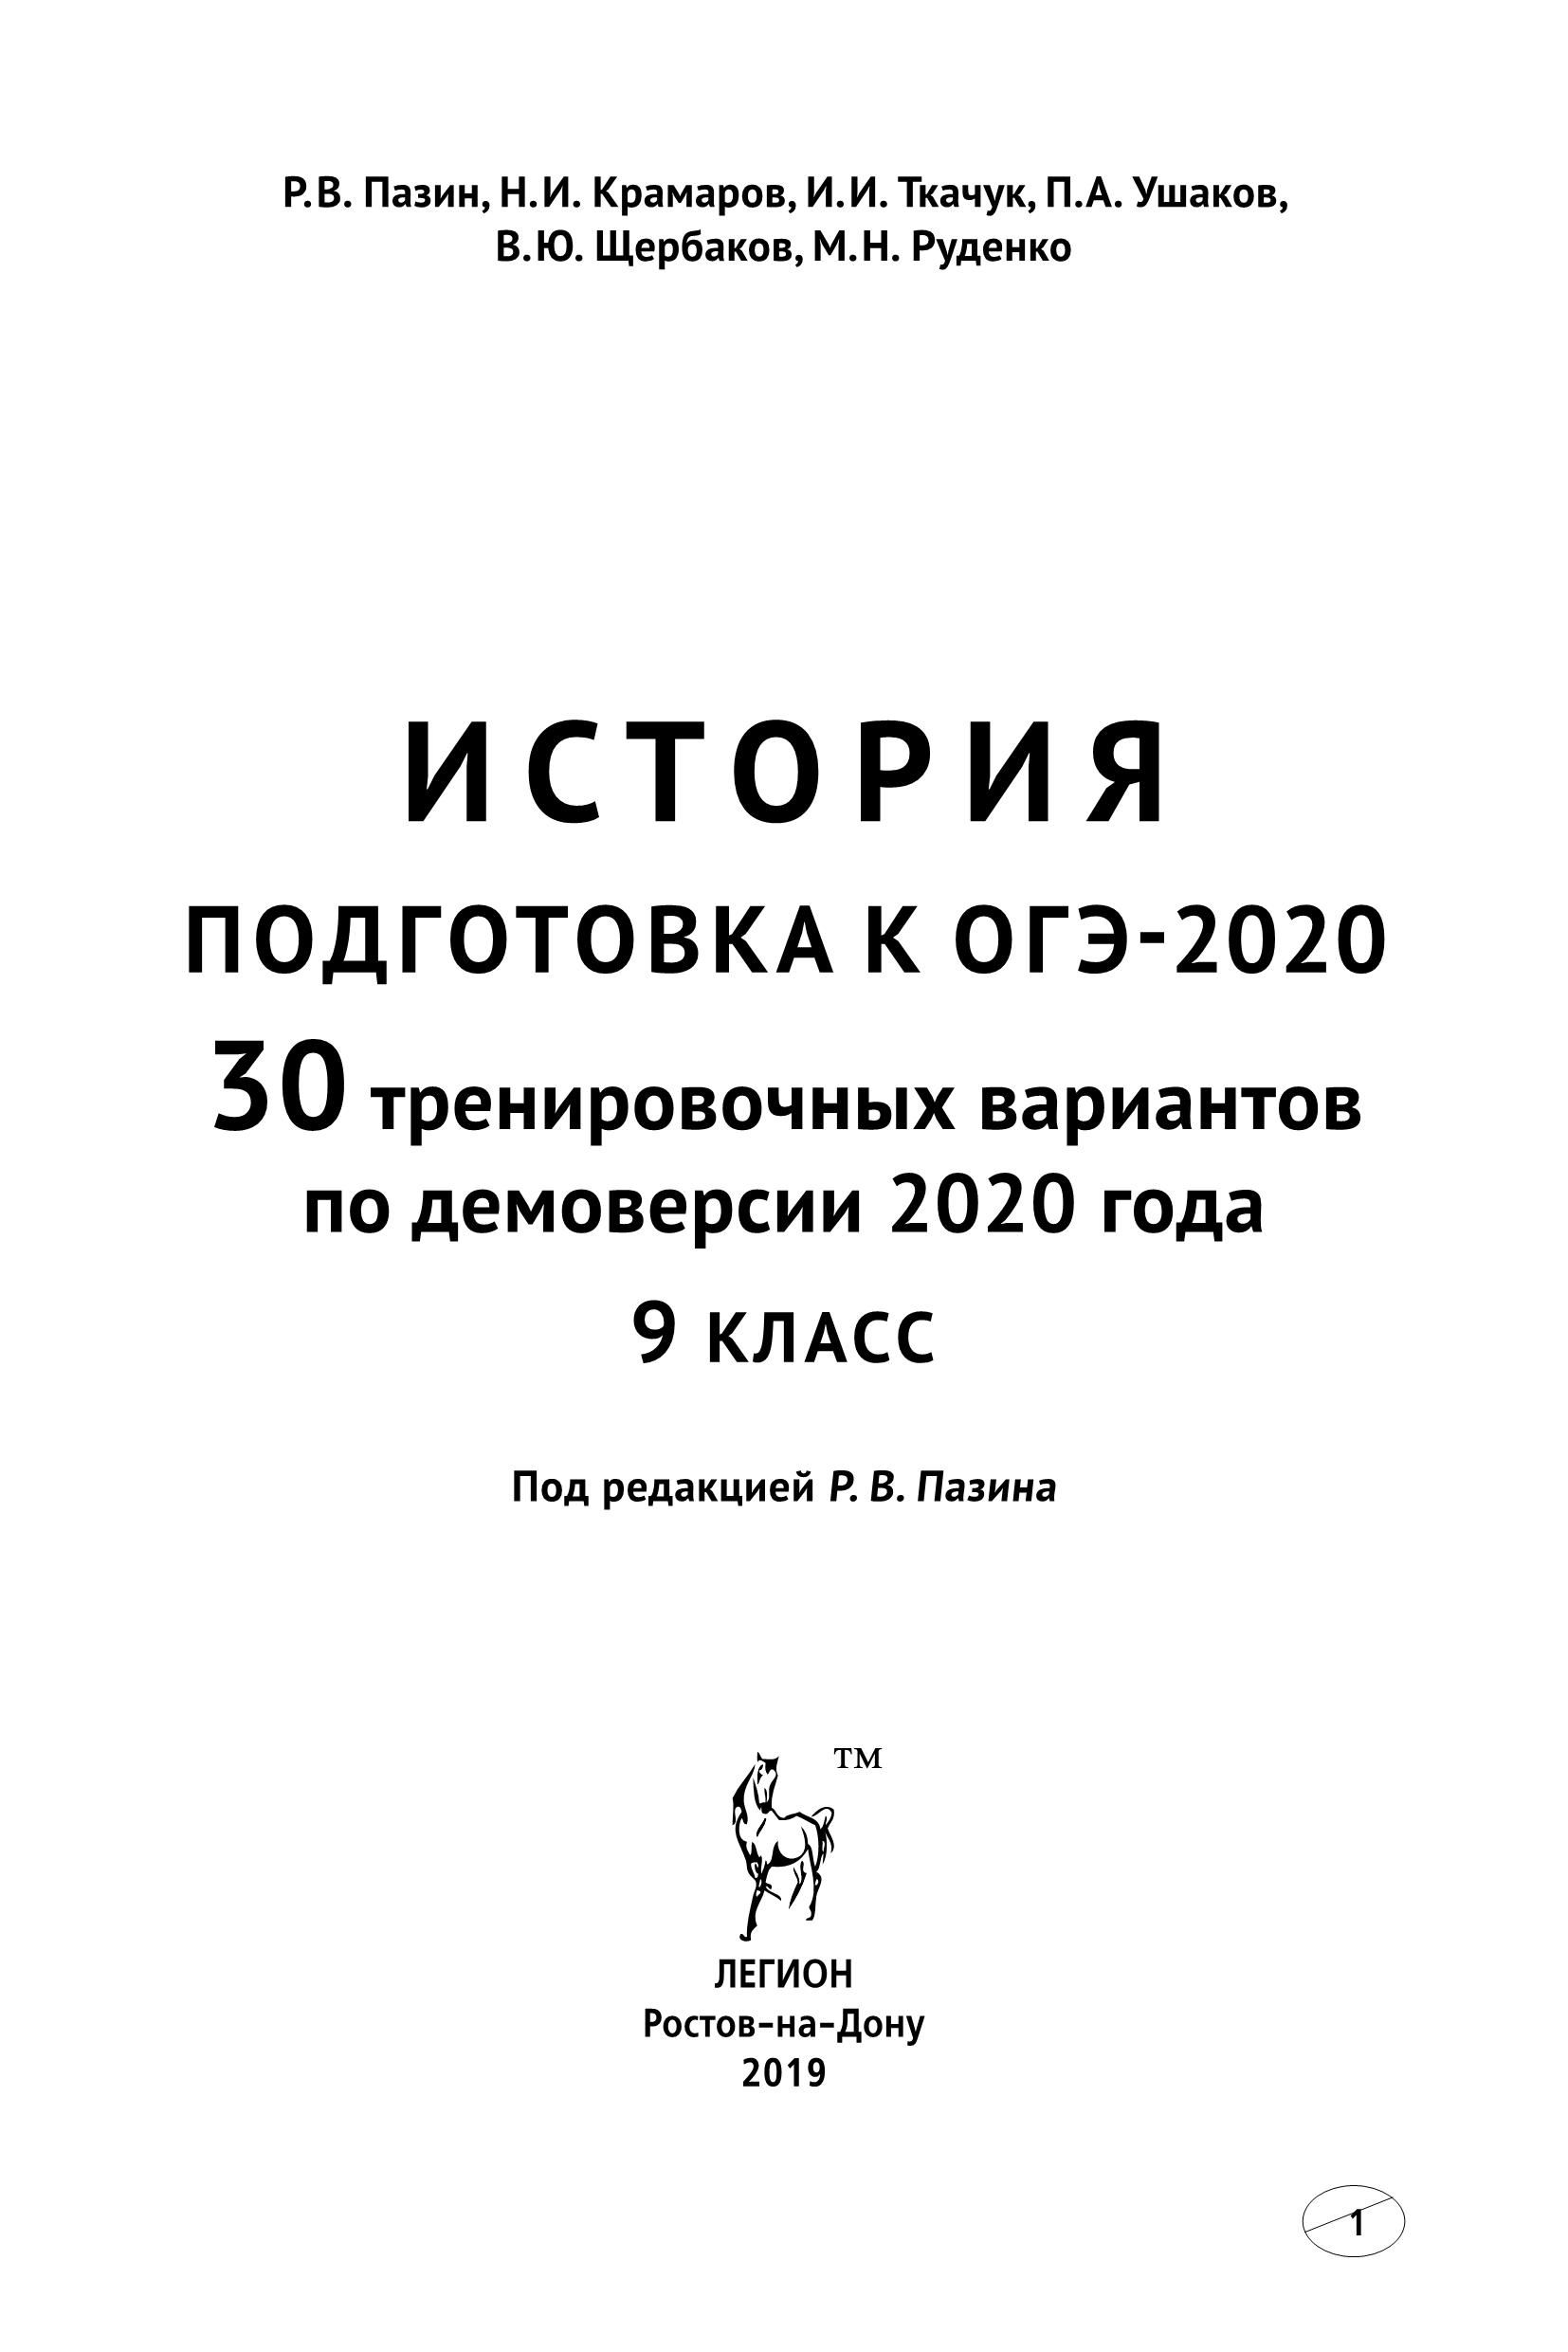 История. Подготовка к ОГЭ-2020. 9 класс. 30 тренировочных вариантов по демоверсии 2020 года